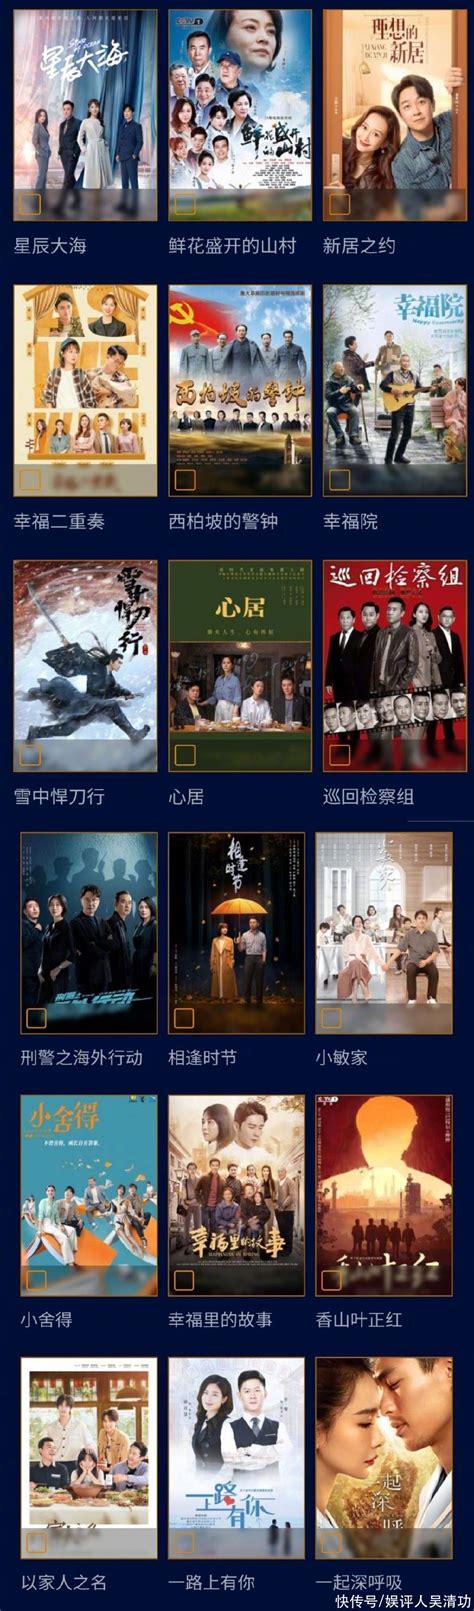 第31届中国电视金鹰奖入围名单公布 多部热剧位列其中_新浪图片